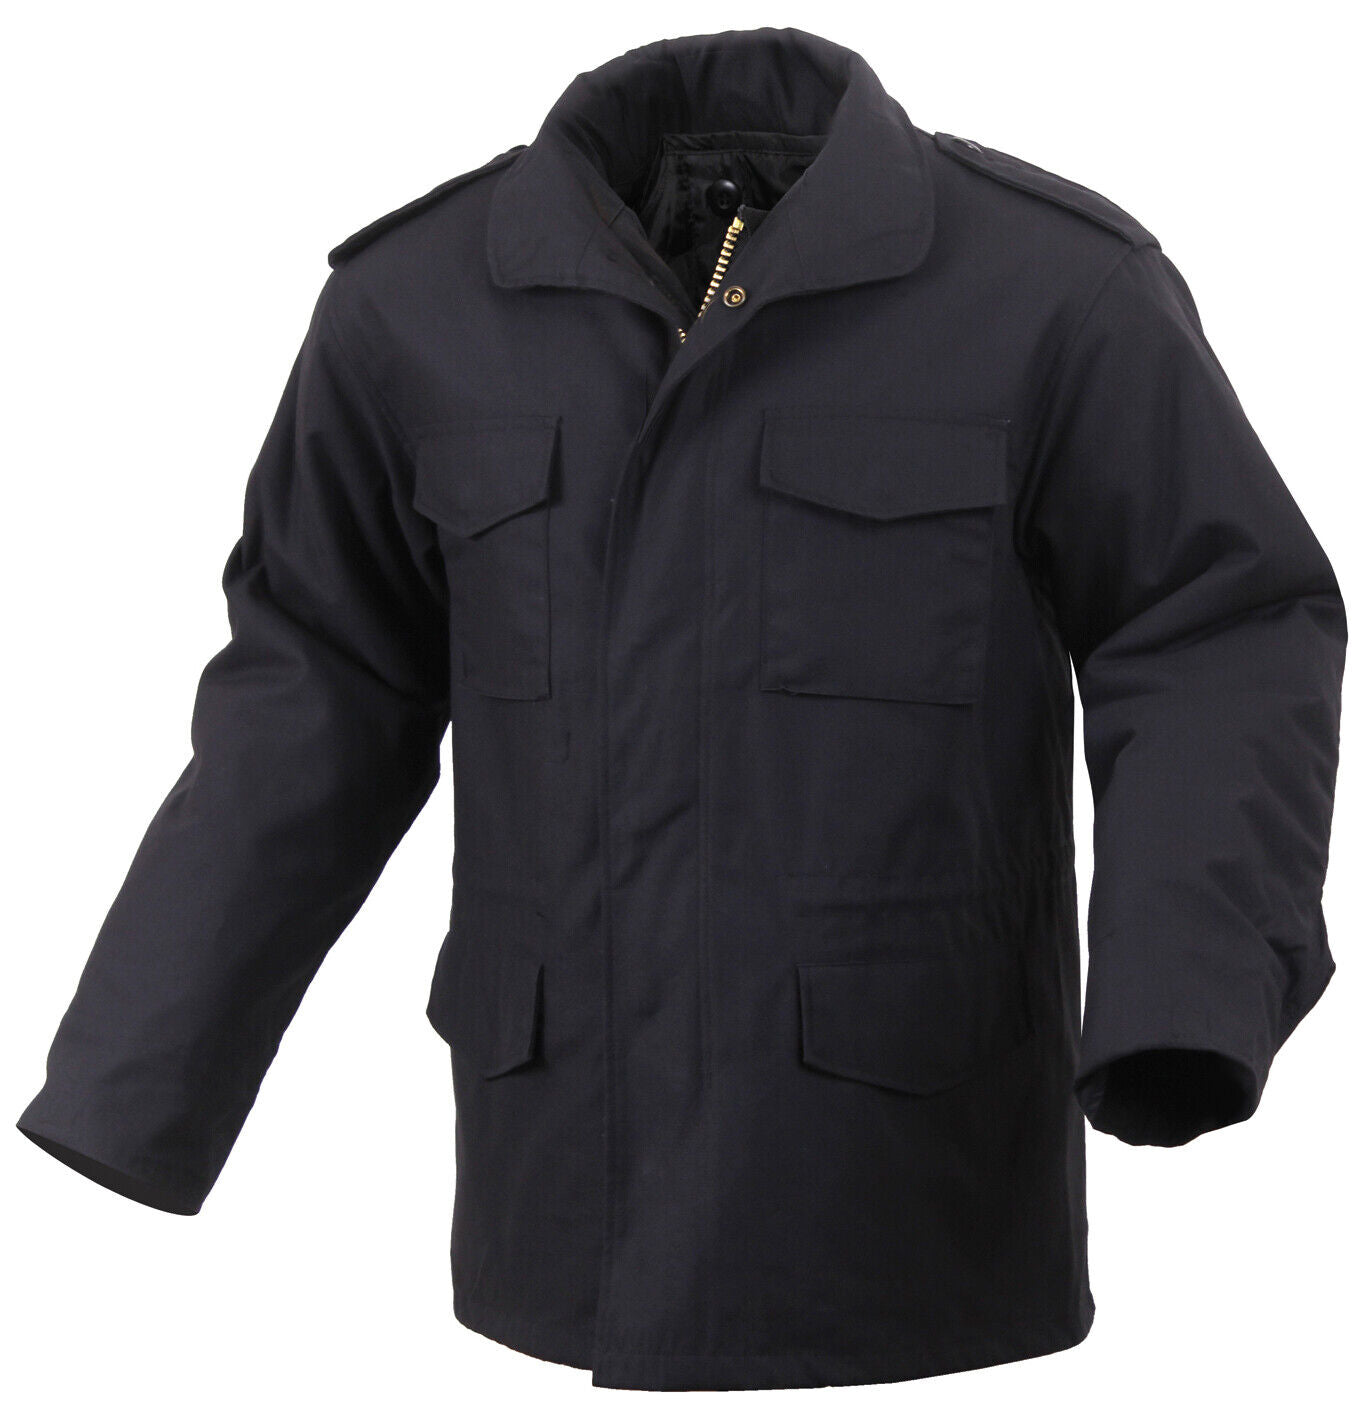 Men's Long Length M-65 Field Jacket in Winter Coat